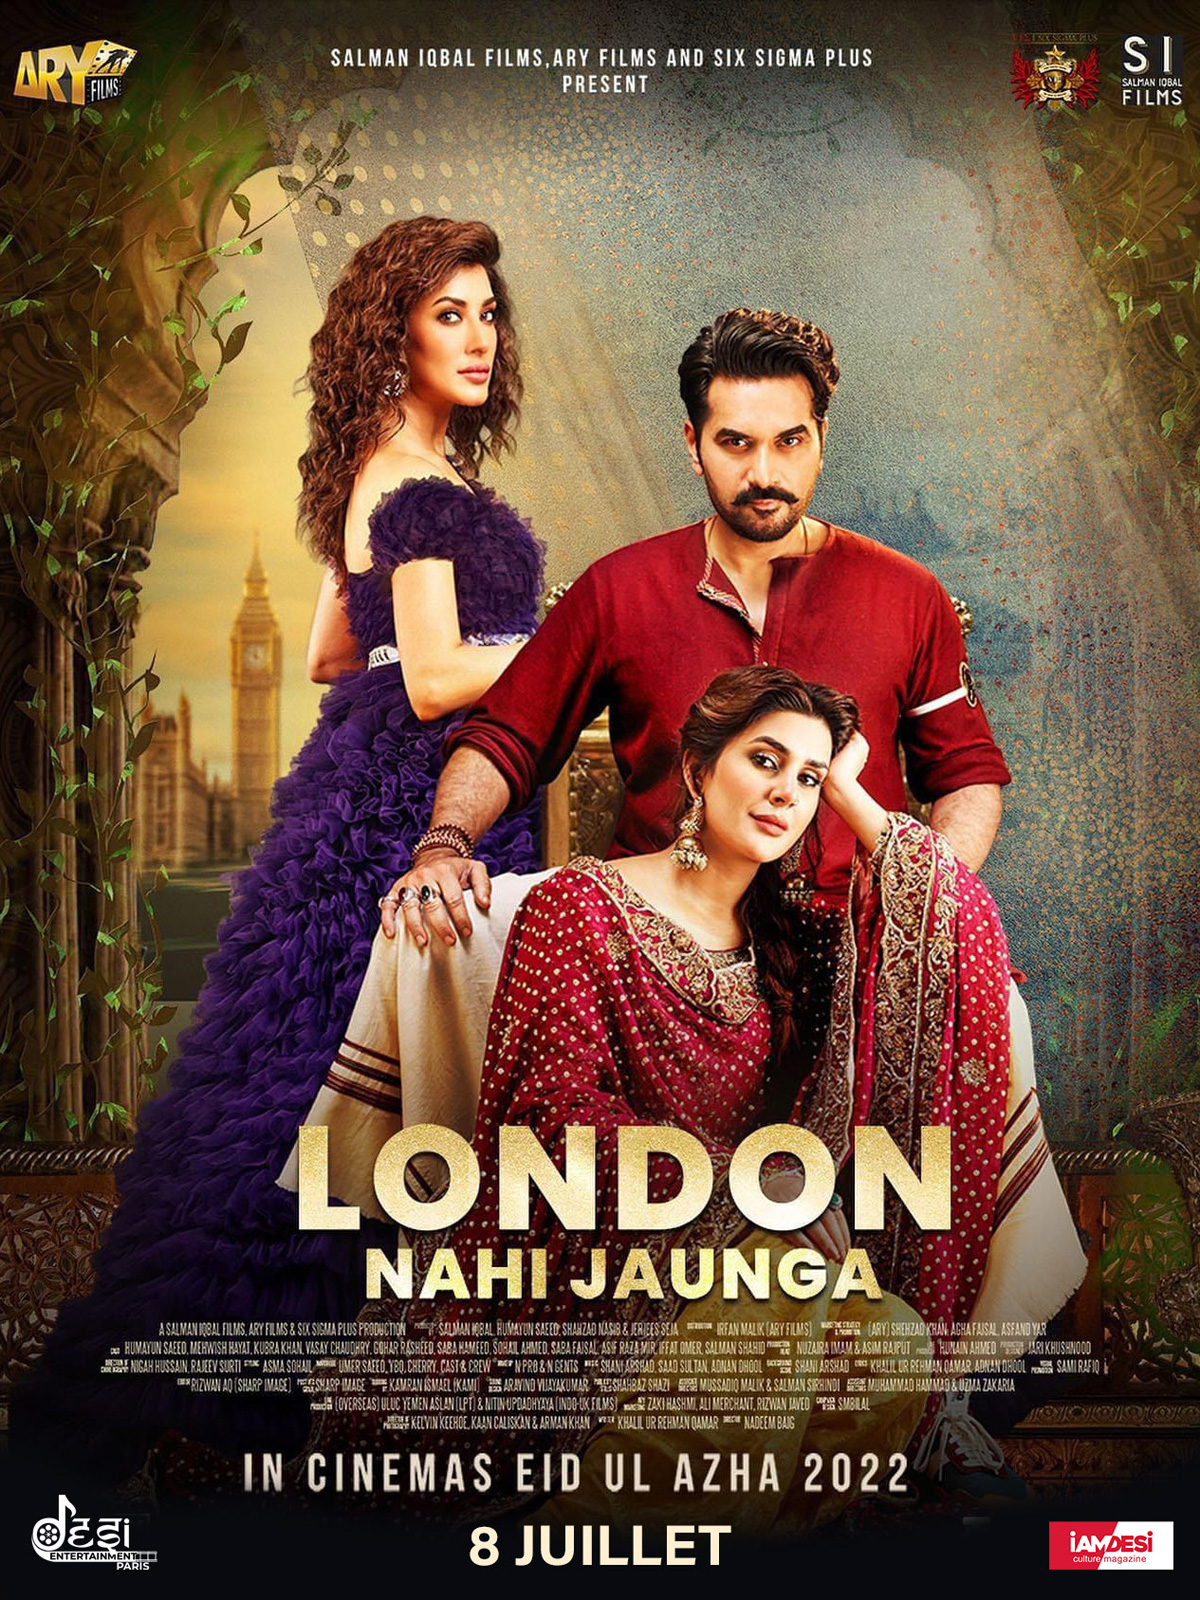 London Nahi Jaunga streaming fr